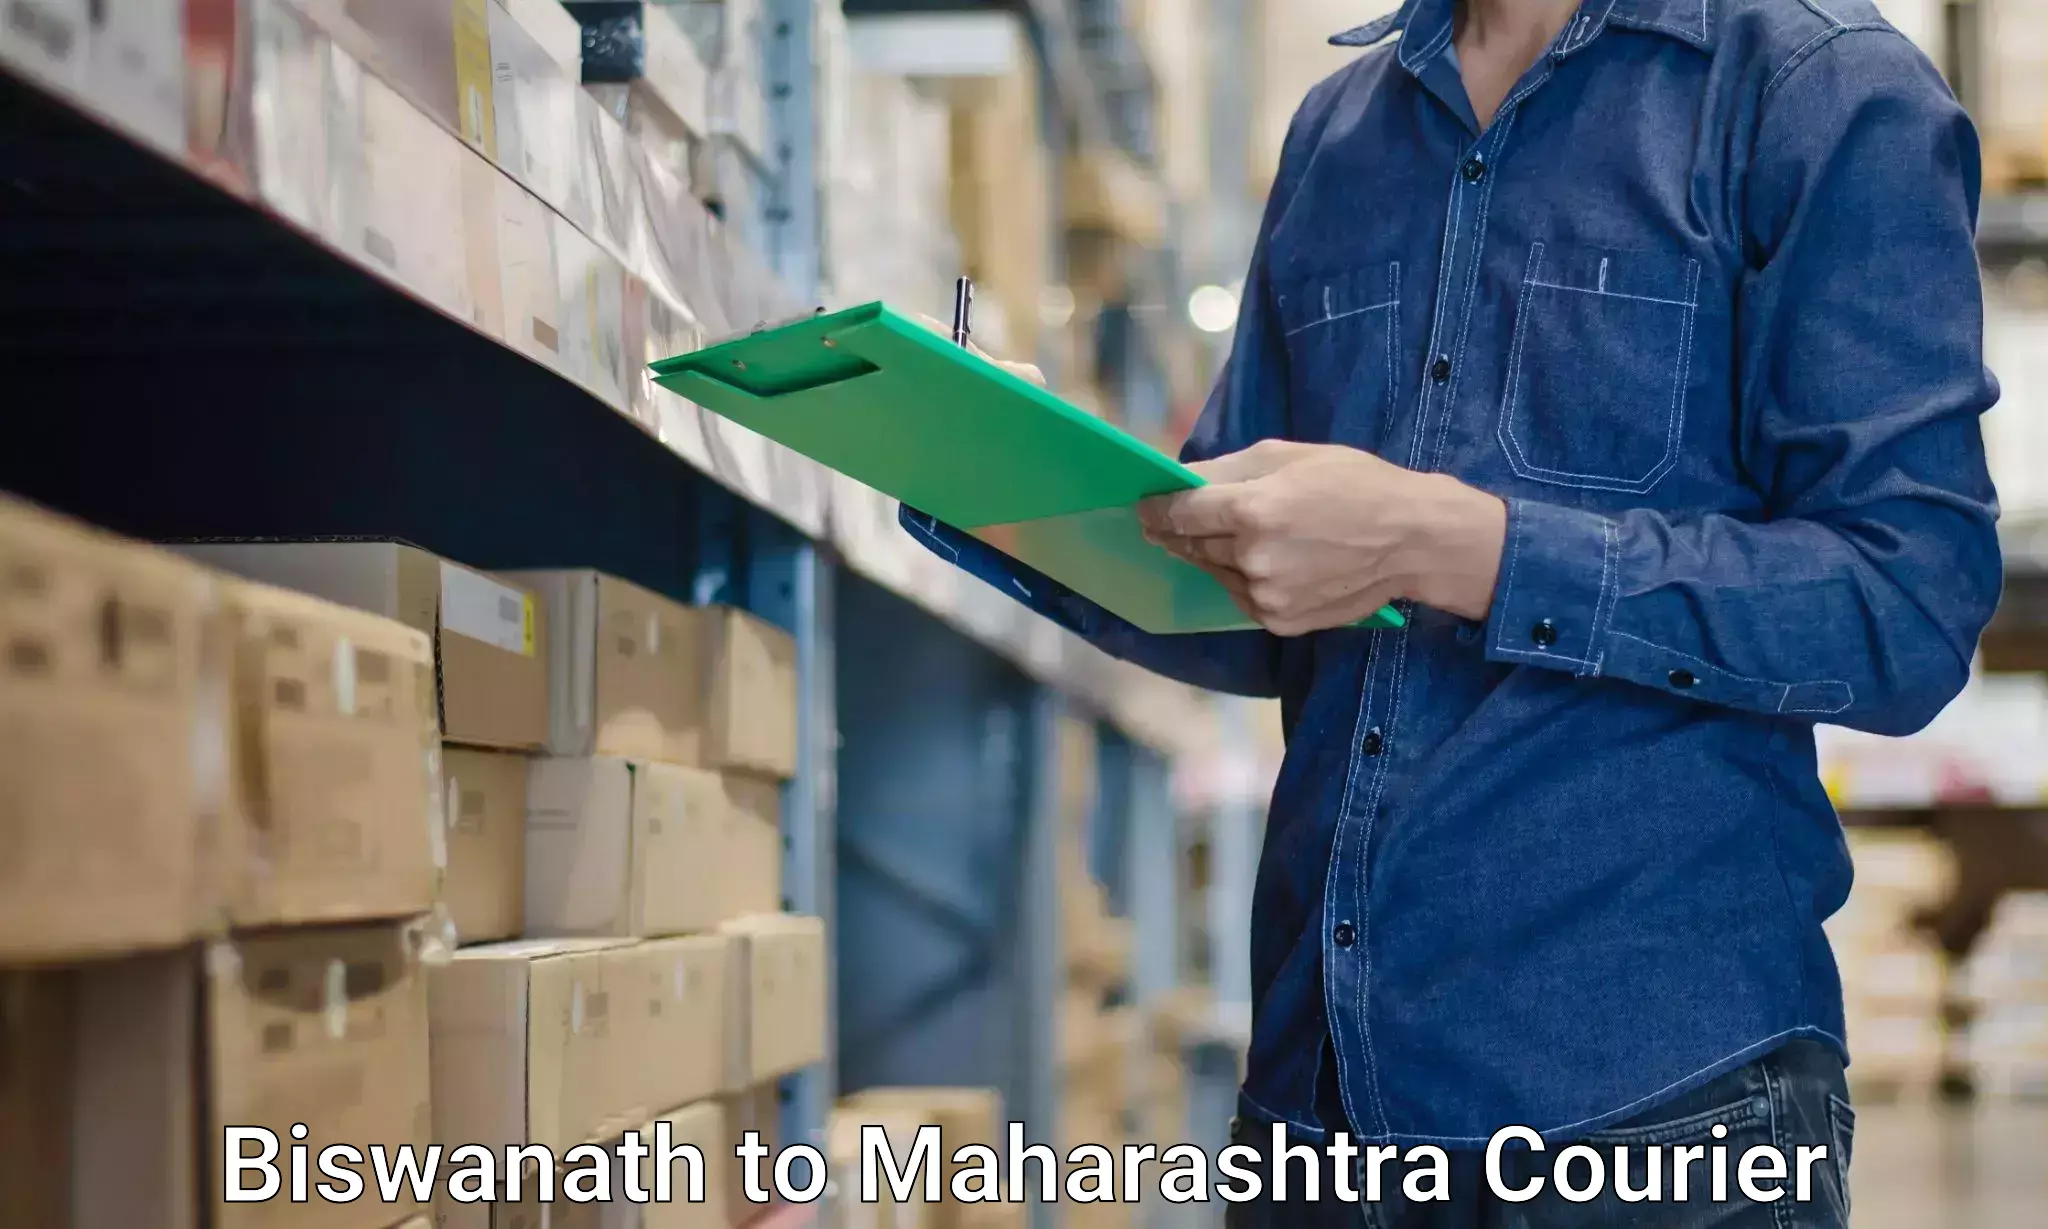 Furniture logistics Biswanath to Latur